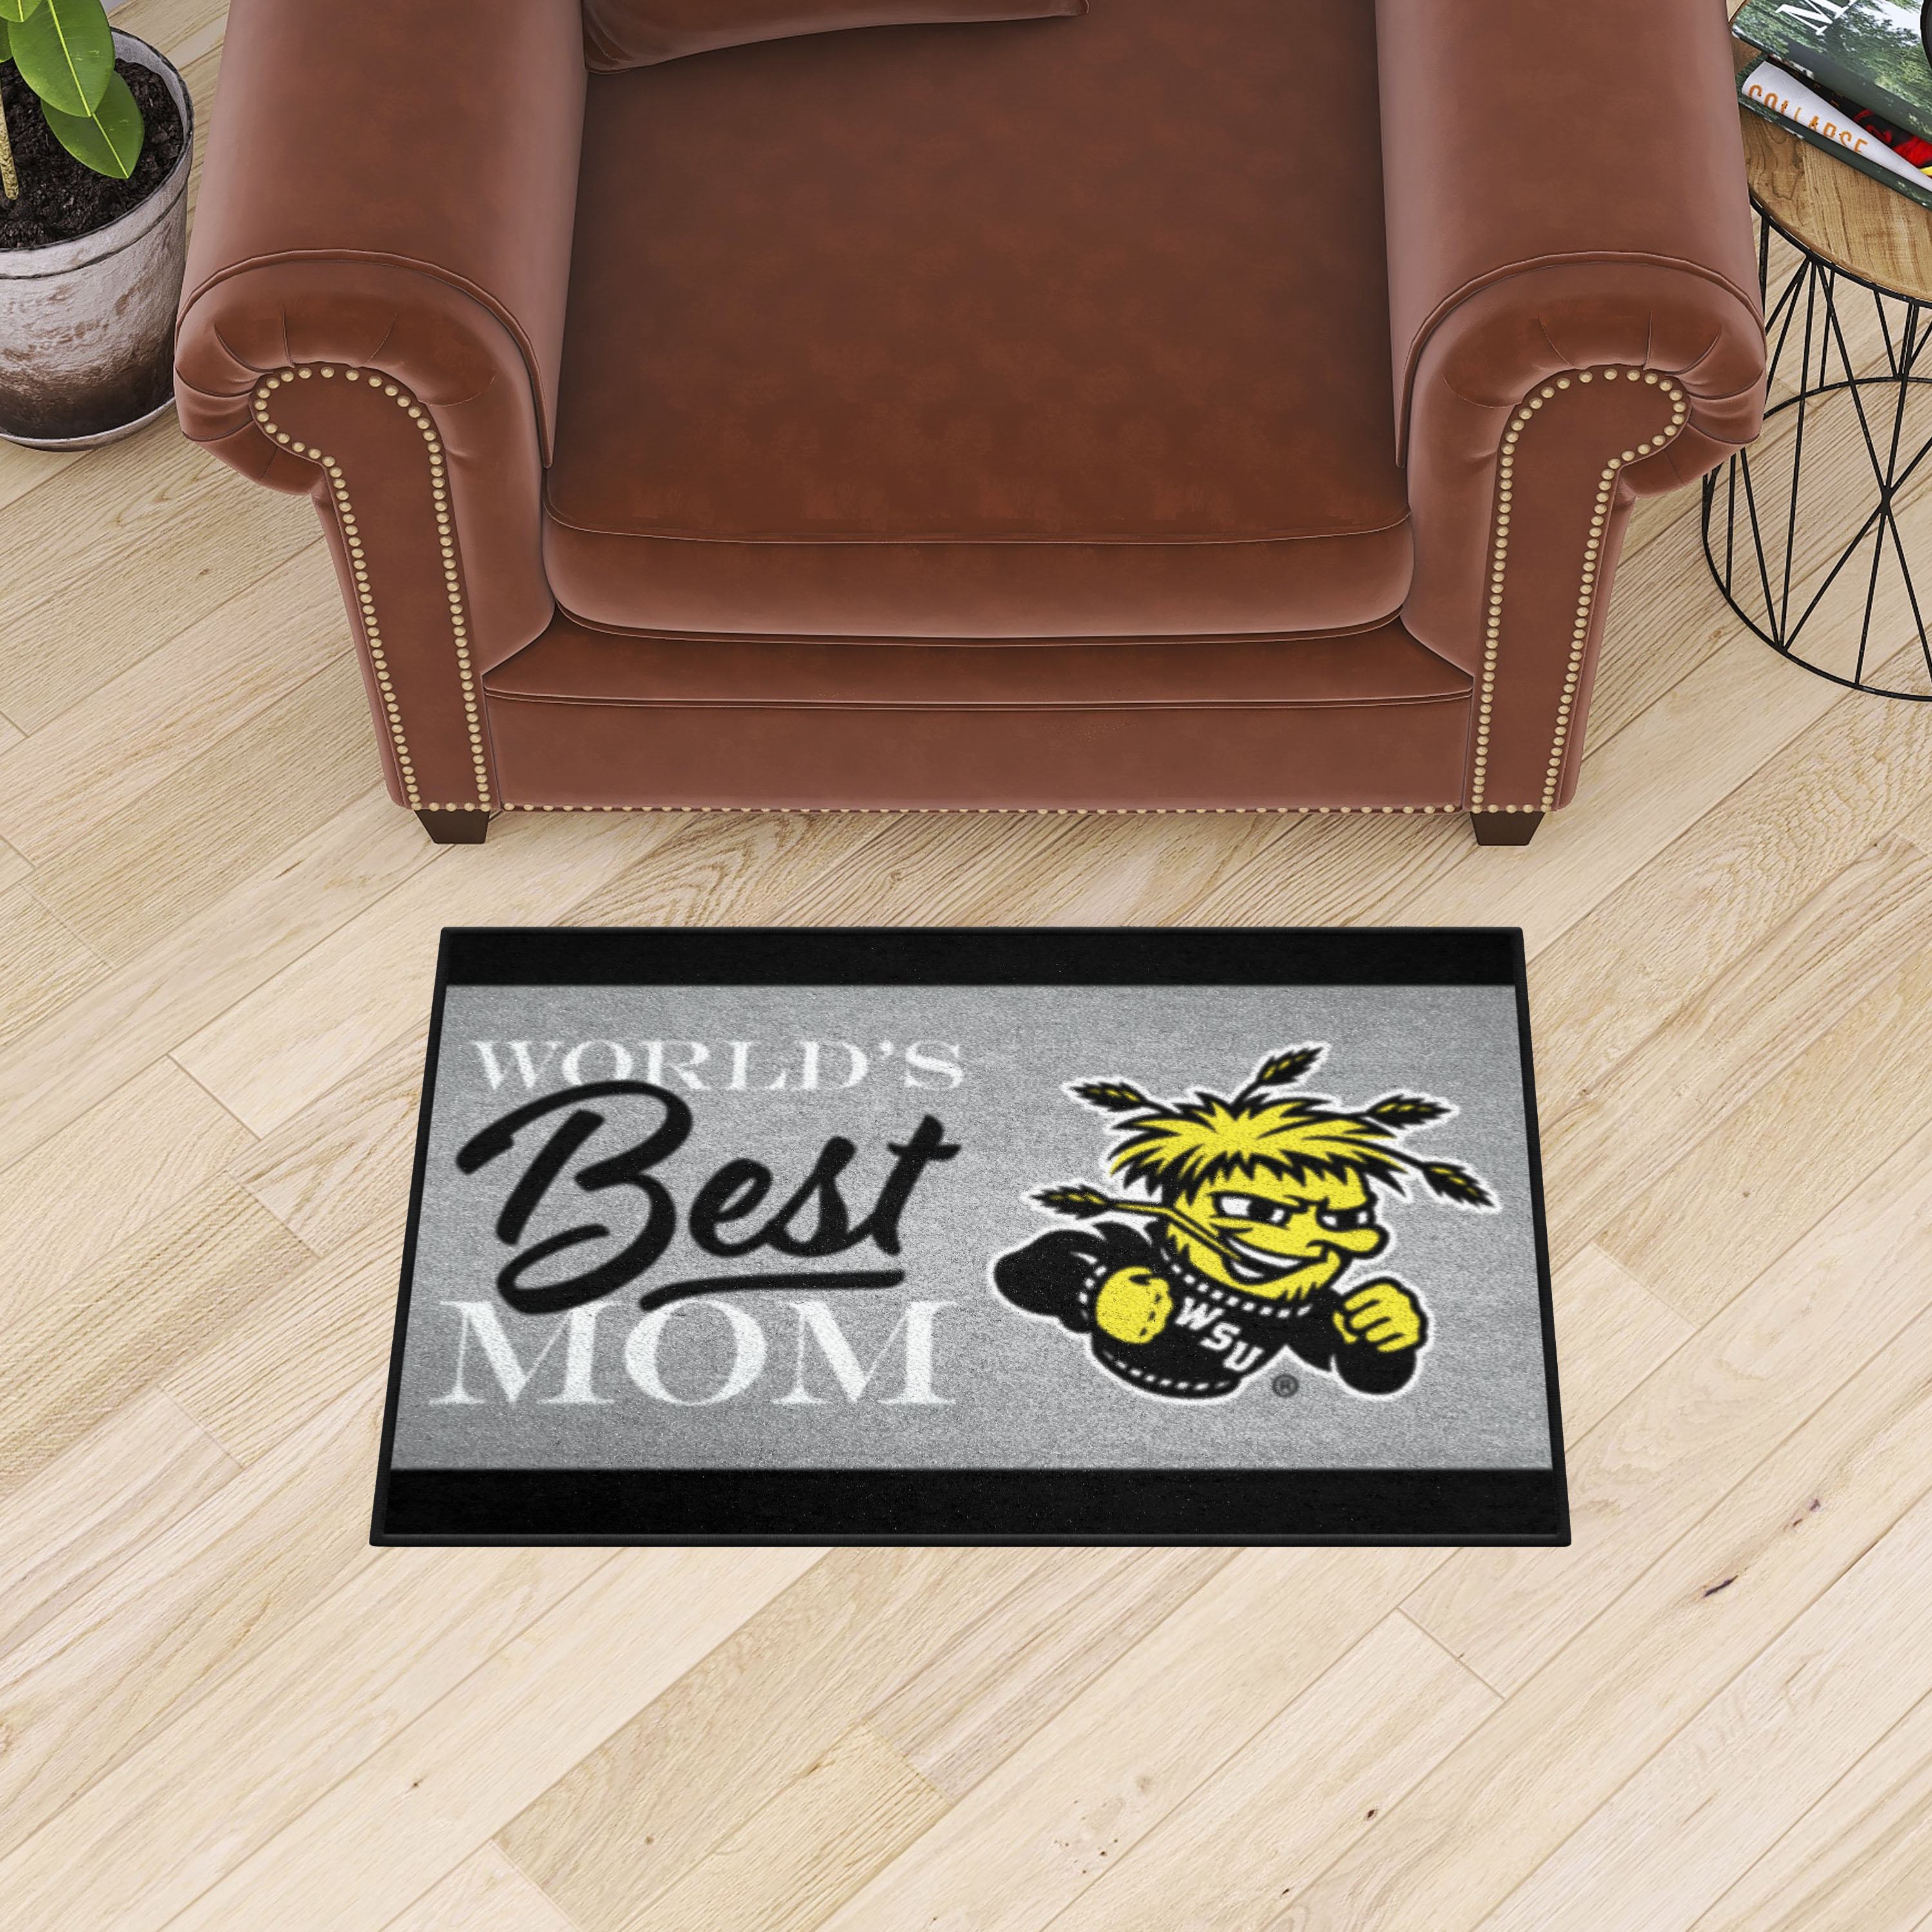 Wichita State Shockers World's Best Mom Starter Doormat - 19 x 30